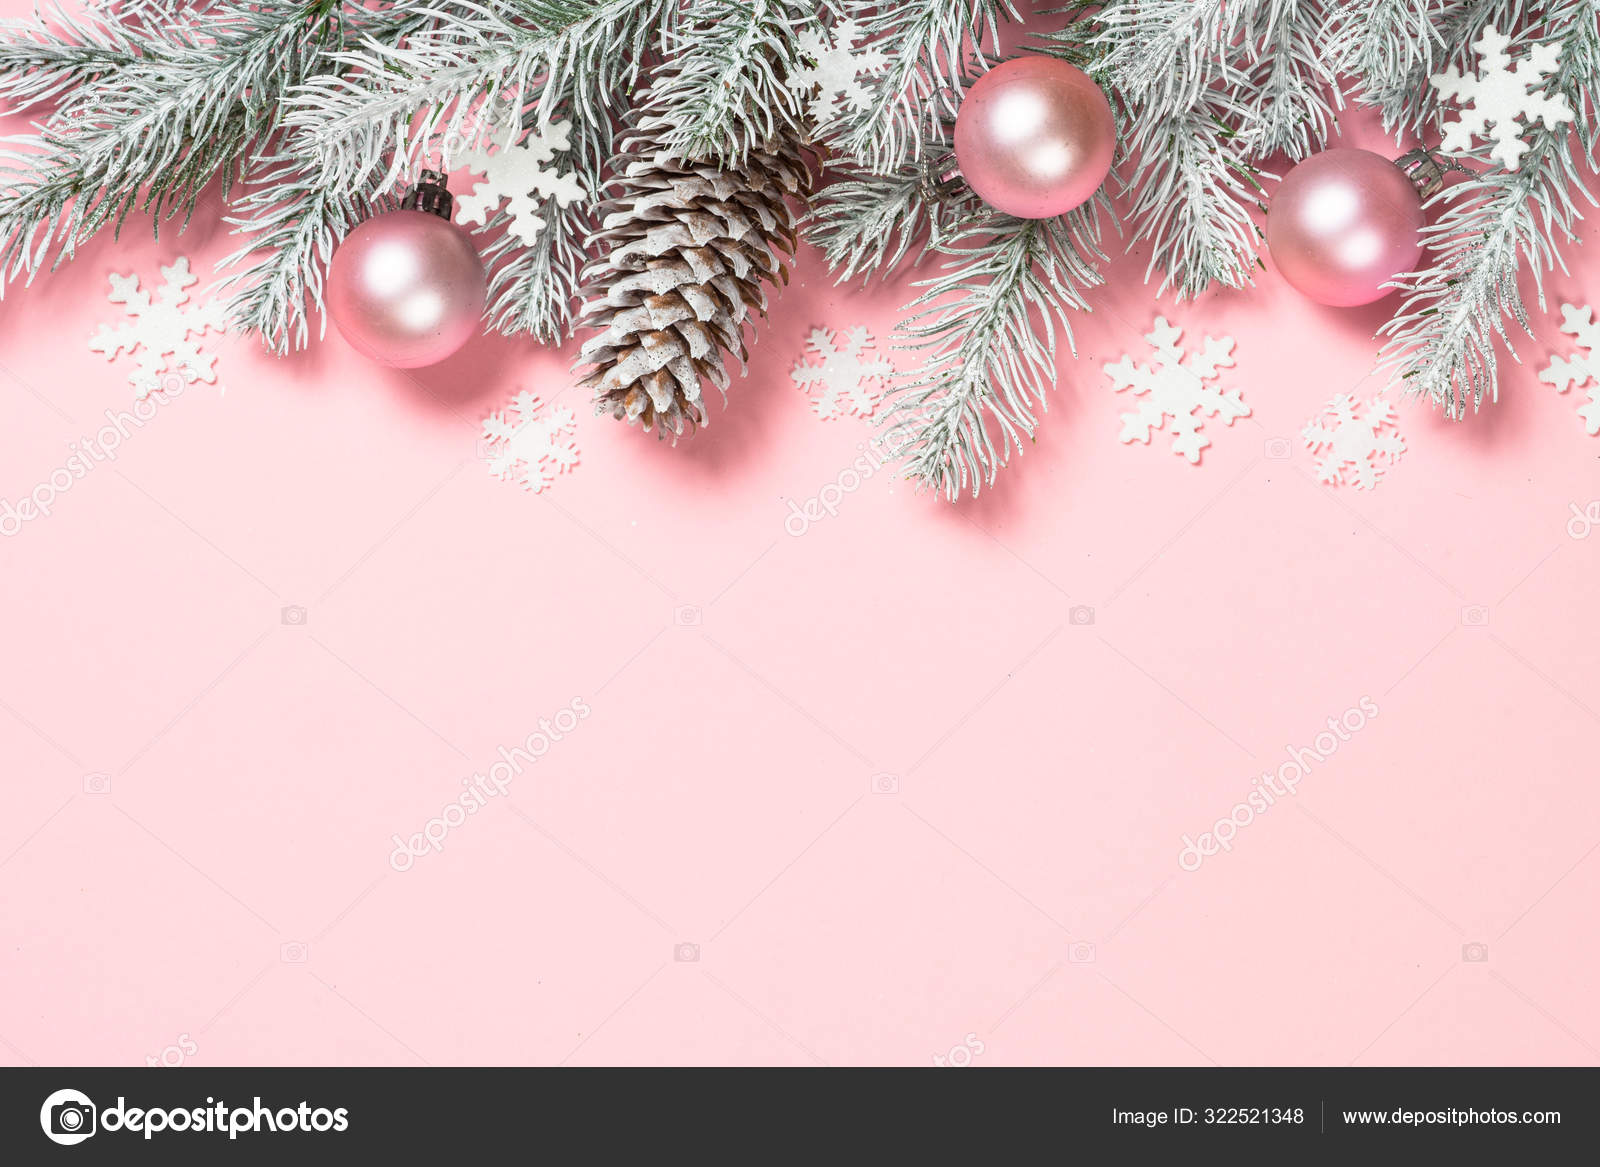 Sự kết hợp giữa nền màu hồng tuyệt đẹp và hộp quà Giáng sinh đầy sắc màu sẽ tạo nên một không gian trang trí Noel vô cùng ấn tượng. Hãy đến và khám phá hình nền phẳng của Giáng sinh này để tận hưởng không gian Noel lung linh!